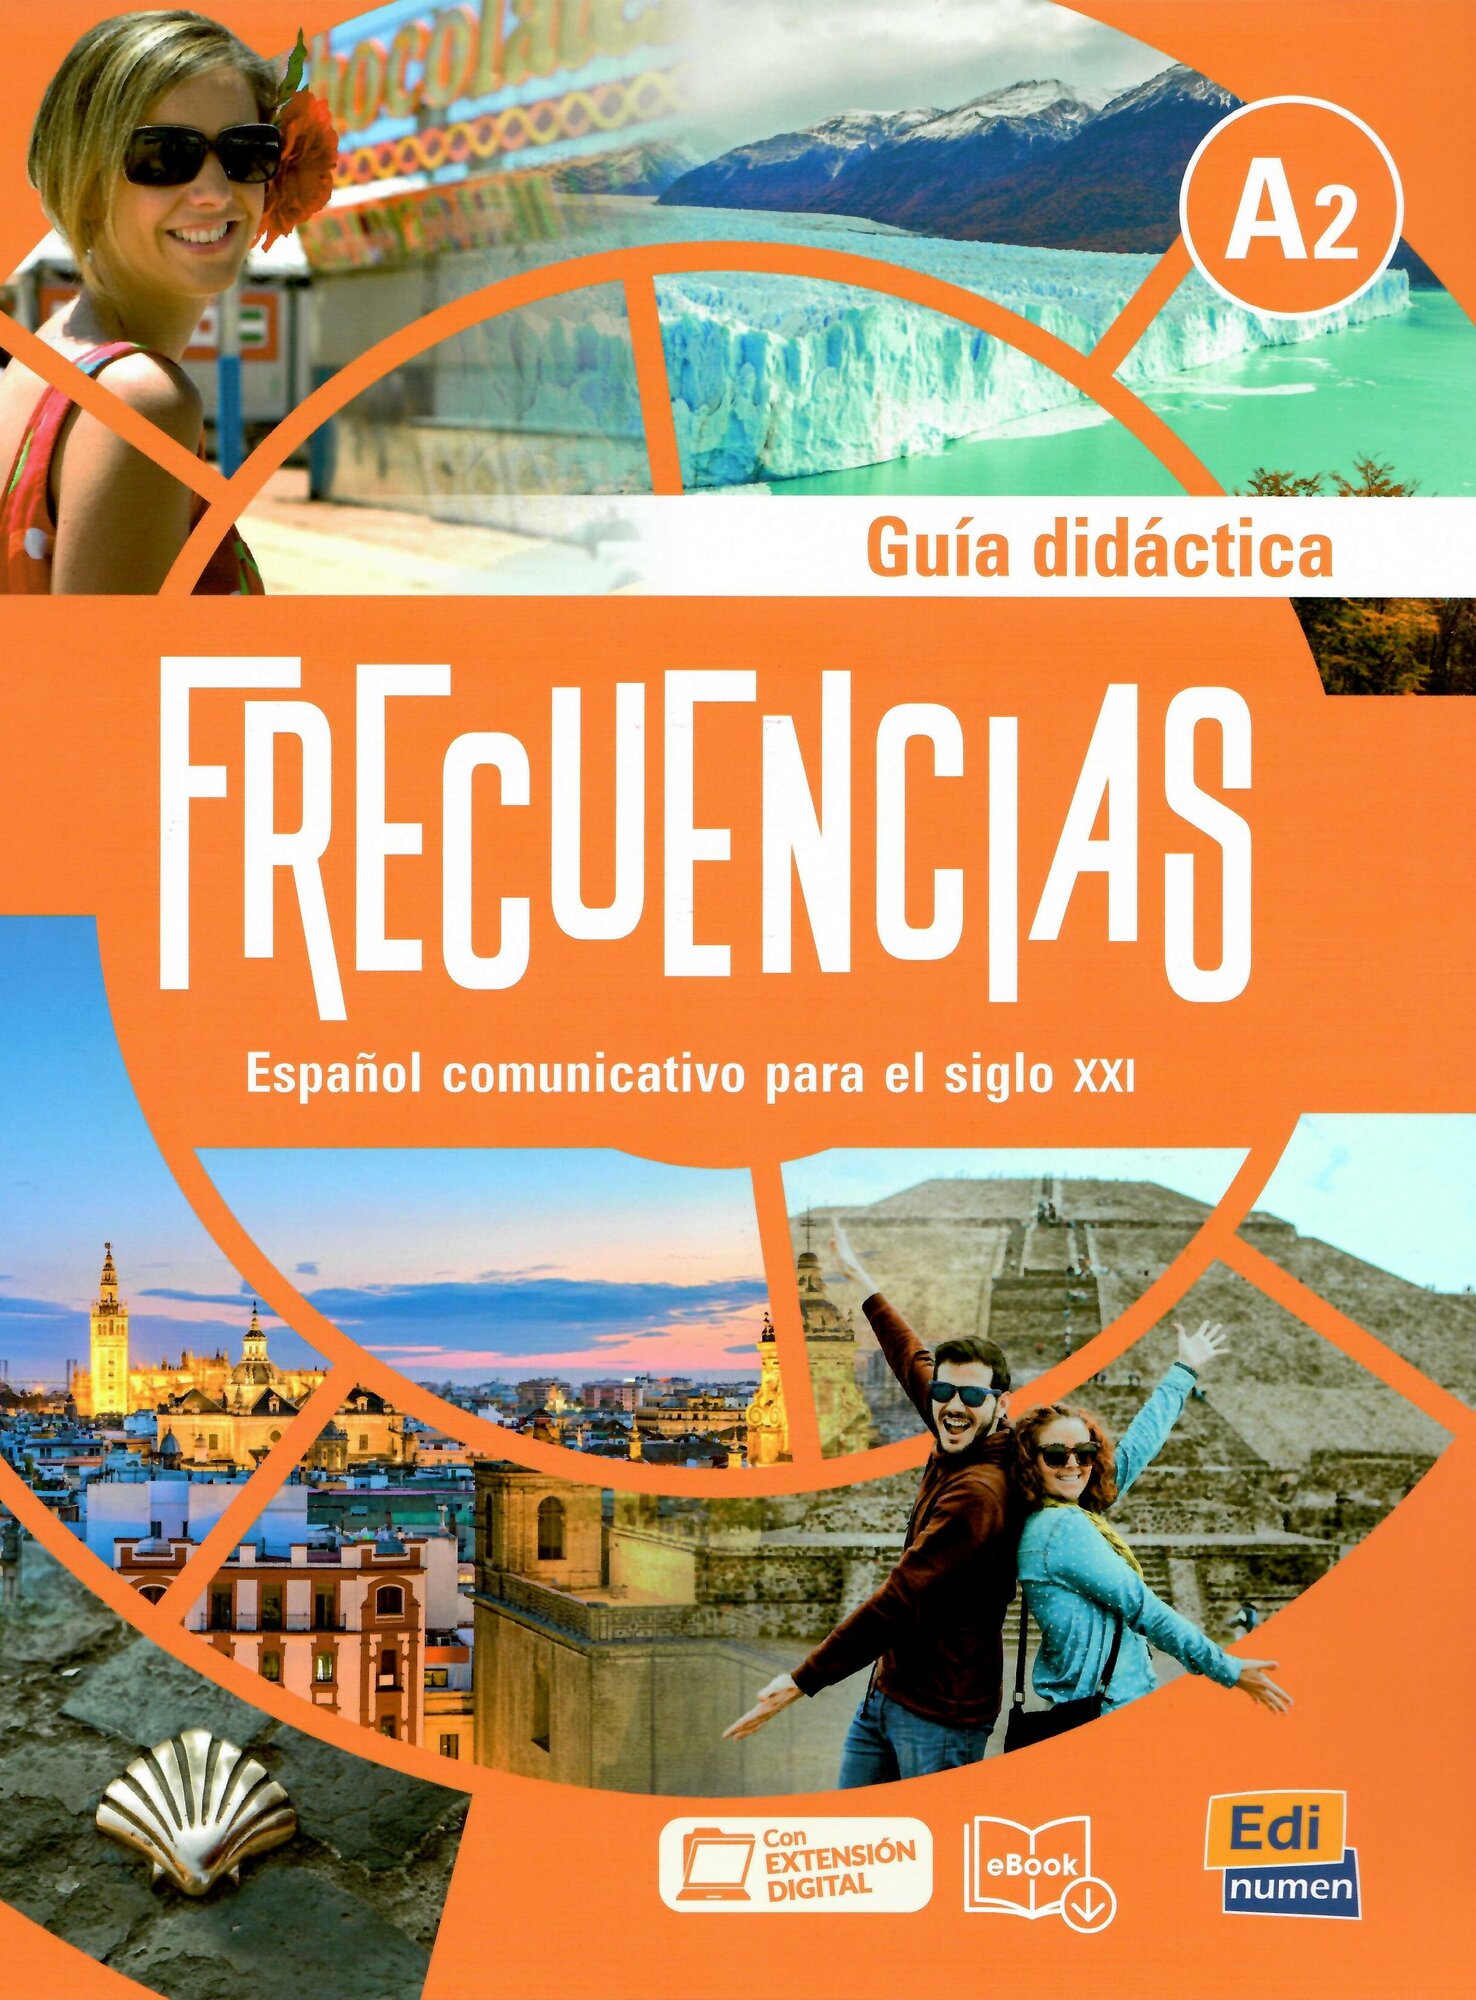 Frecuencias A2 Guia didactica+Extension digital, книга для учителя к учебнику испанского языка для студентов и взрослых